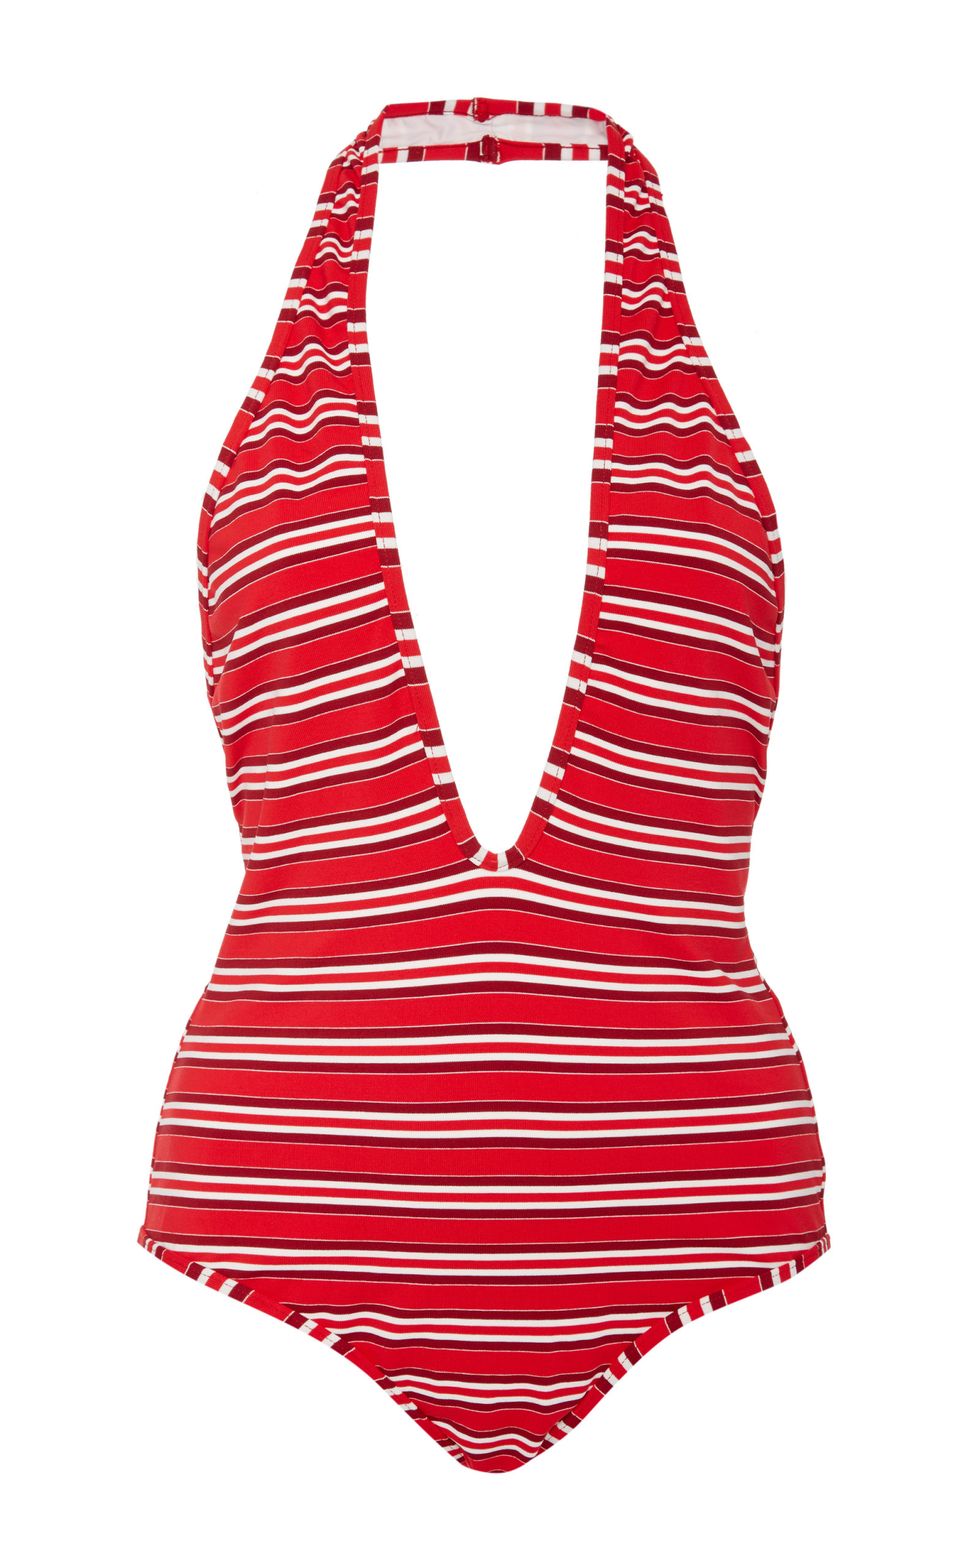 <p><strong>Zimmermann</strong> one-piece swimsuit, $295, <a href="https://www.modaoperandi.com/zimmermann-pf16/roza-striped-one-piece-swimsuit" target="_blank">modaoperandi.com</a>. </p>